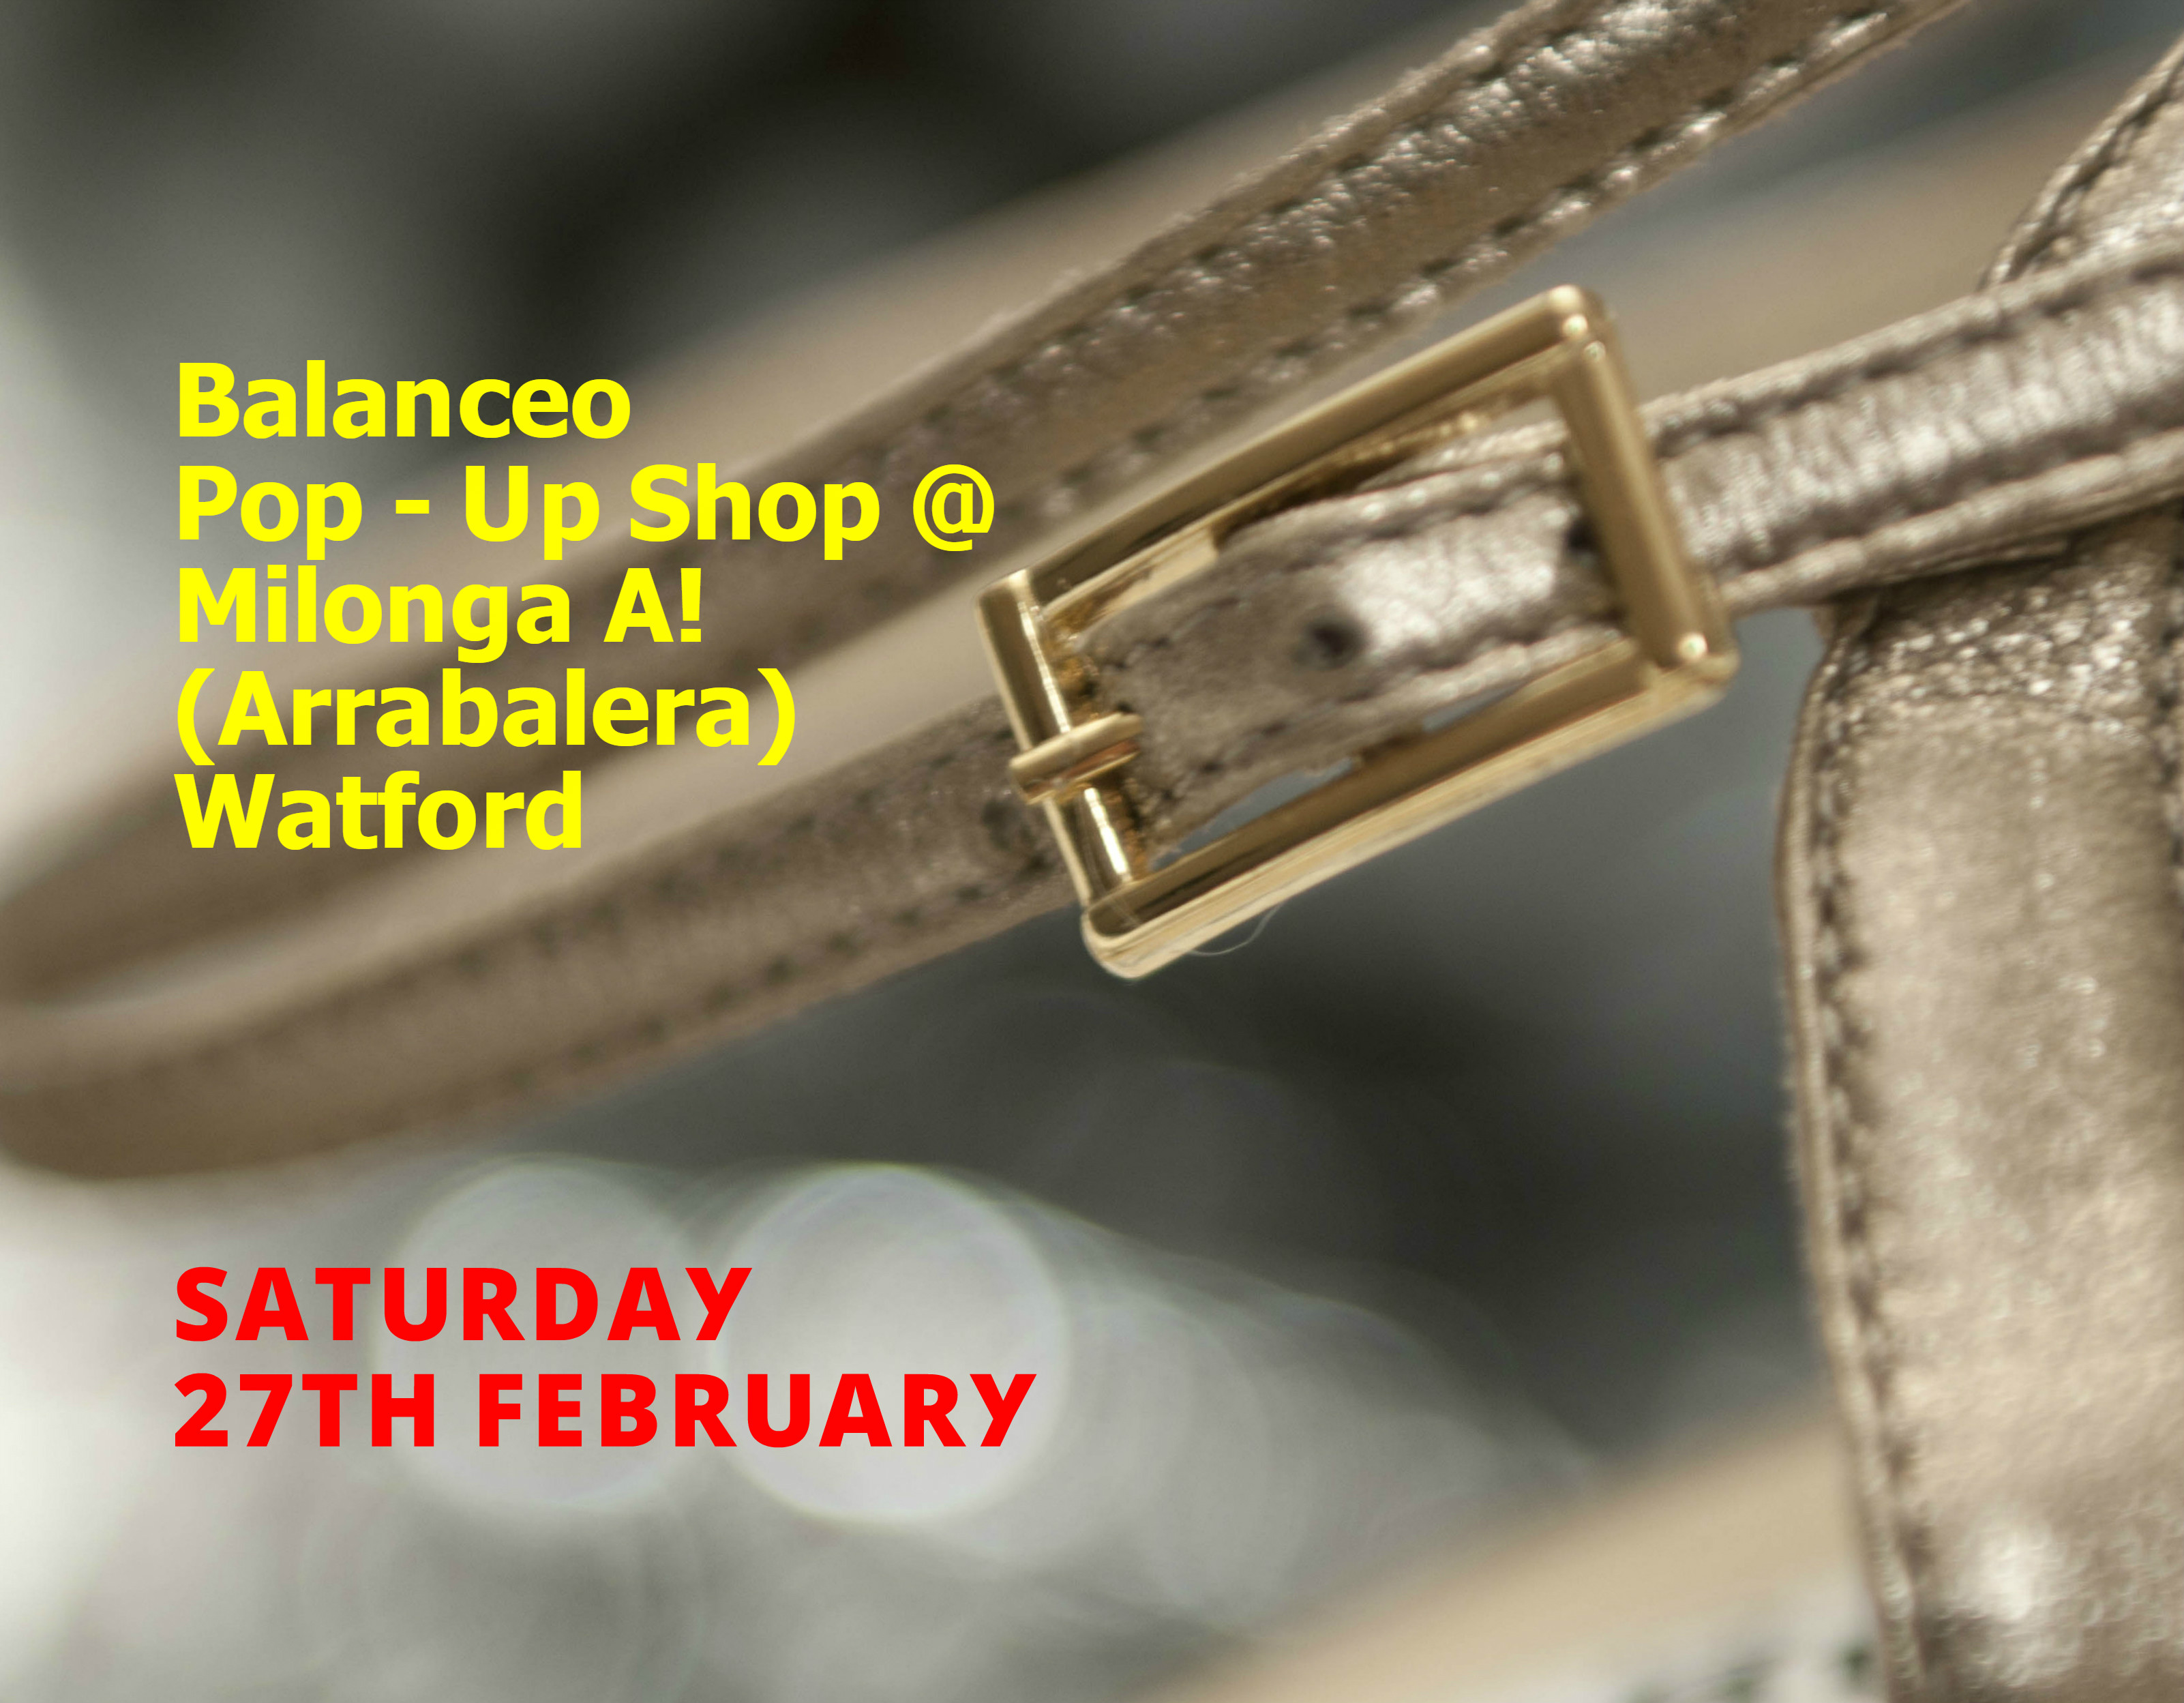 Balanceo @ Milonga A, Watford